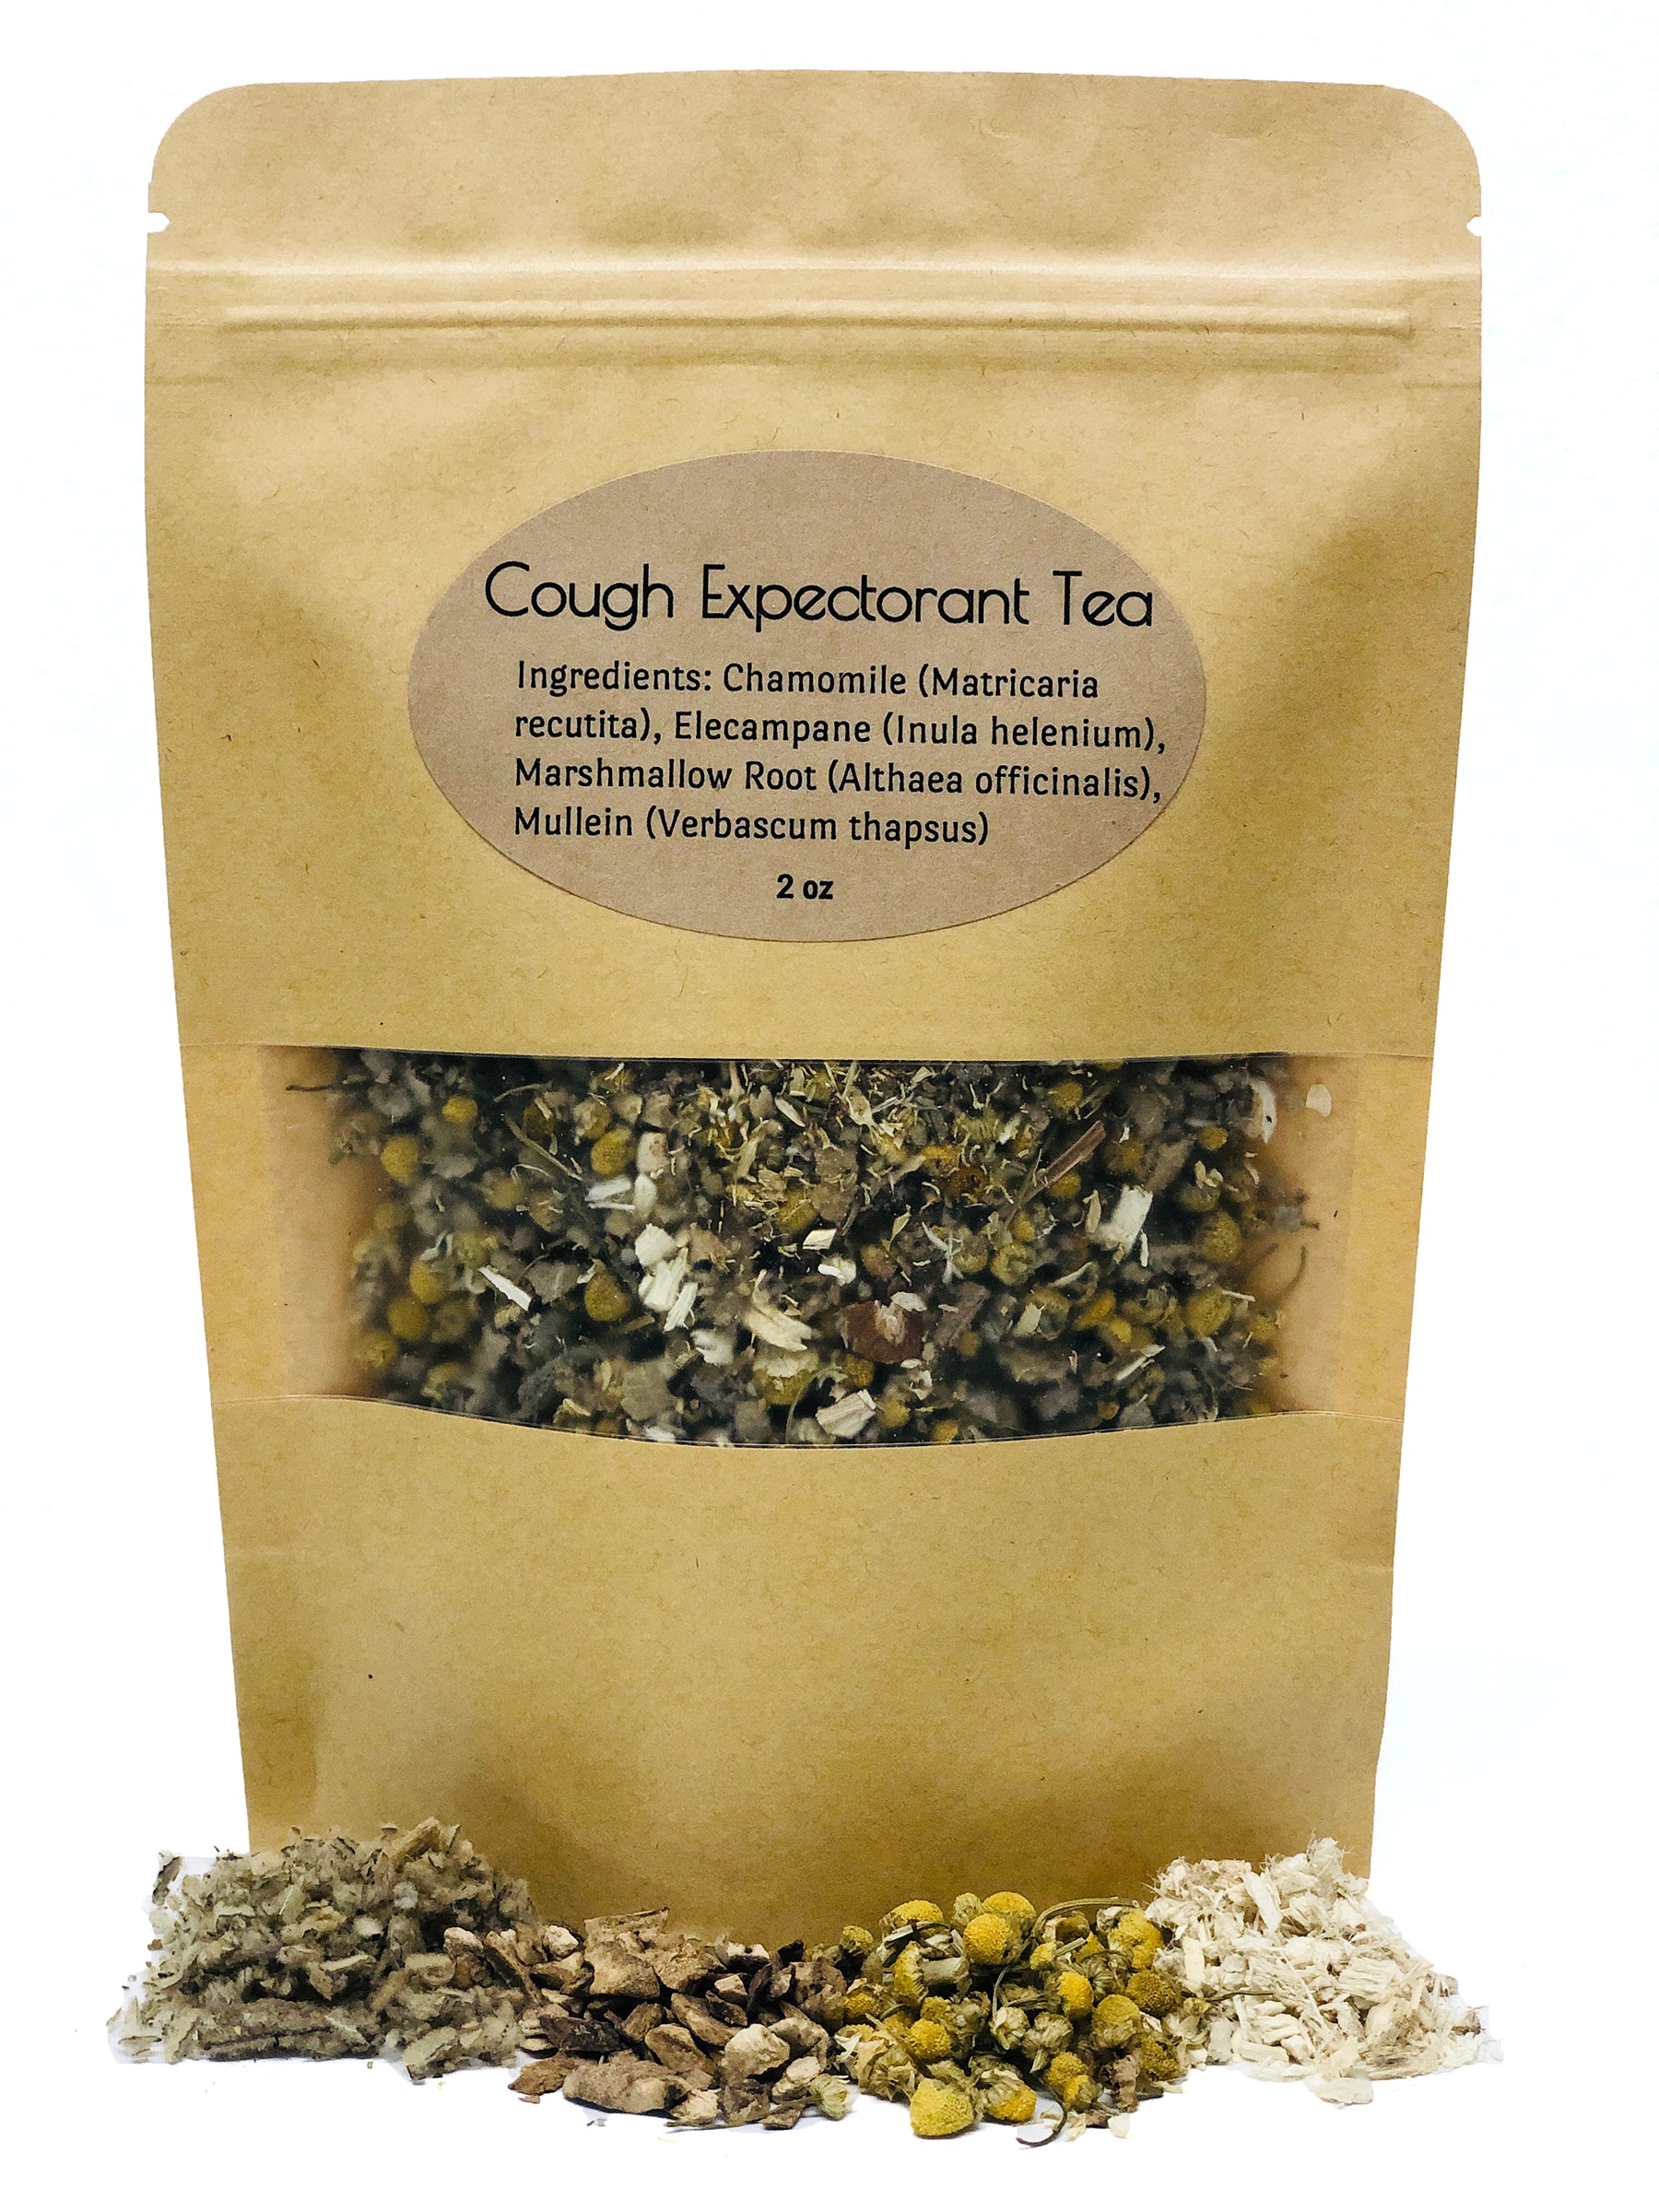 Cough Expectorant Tea Tea The Herbologist Shop 